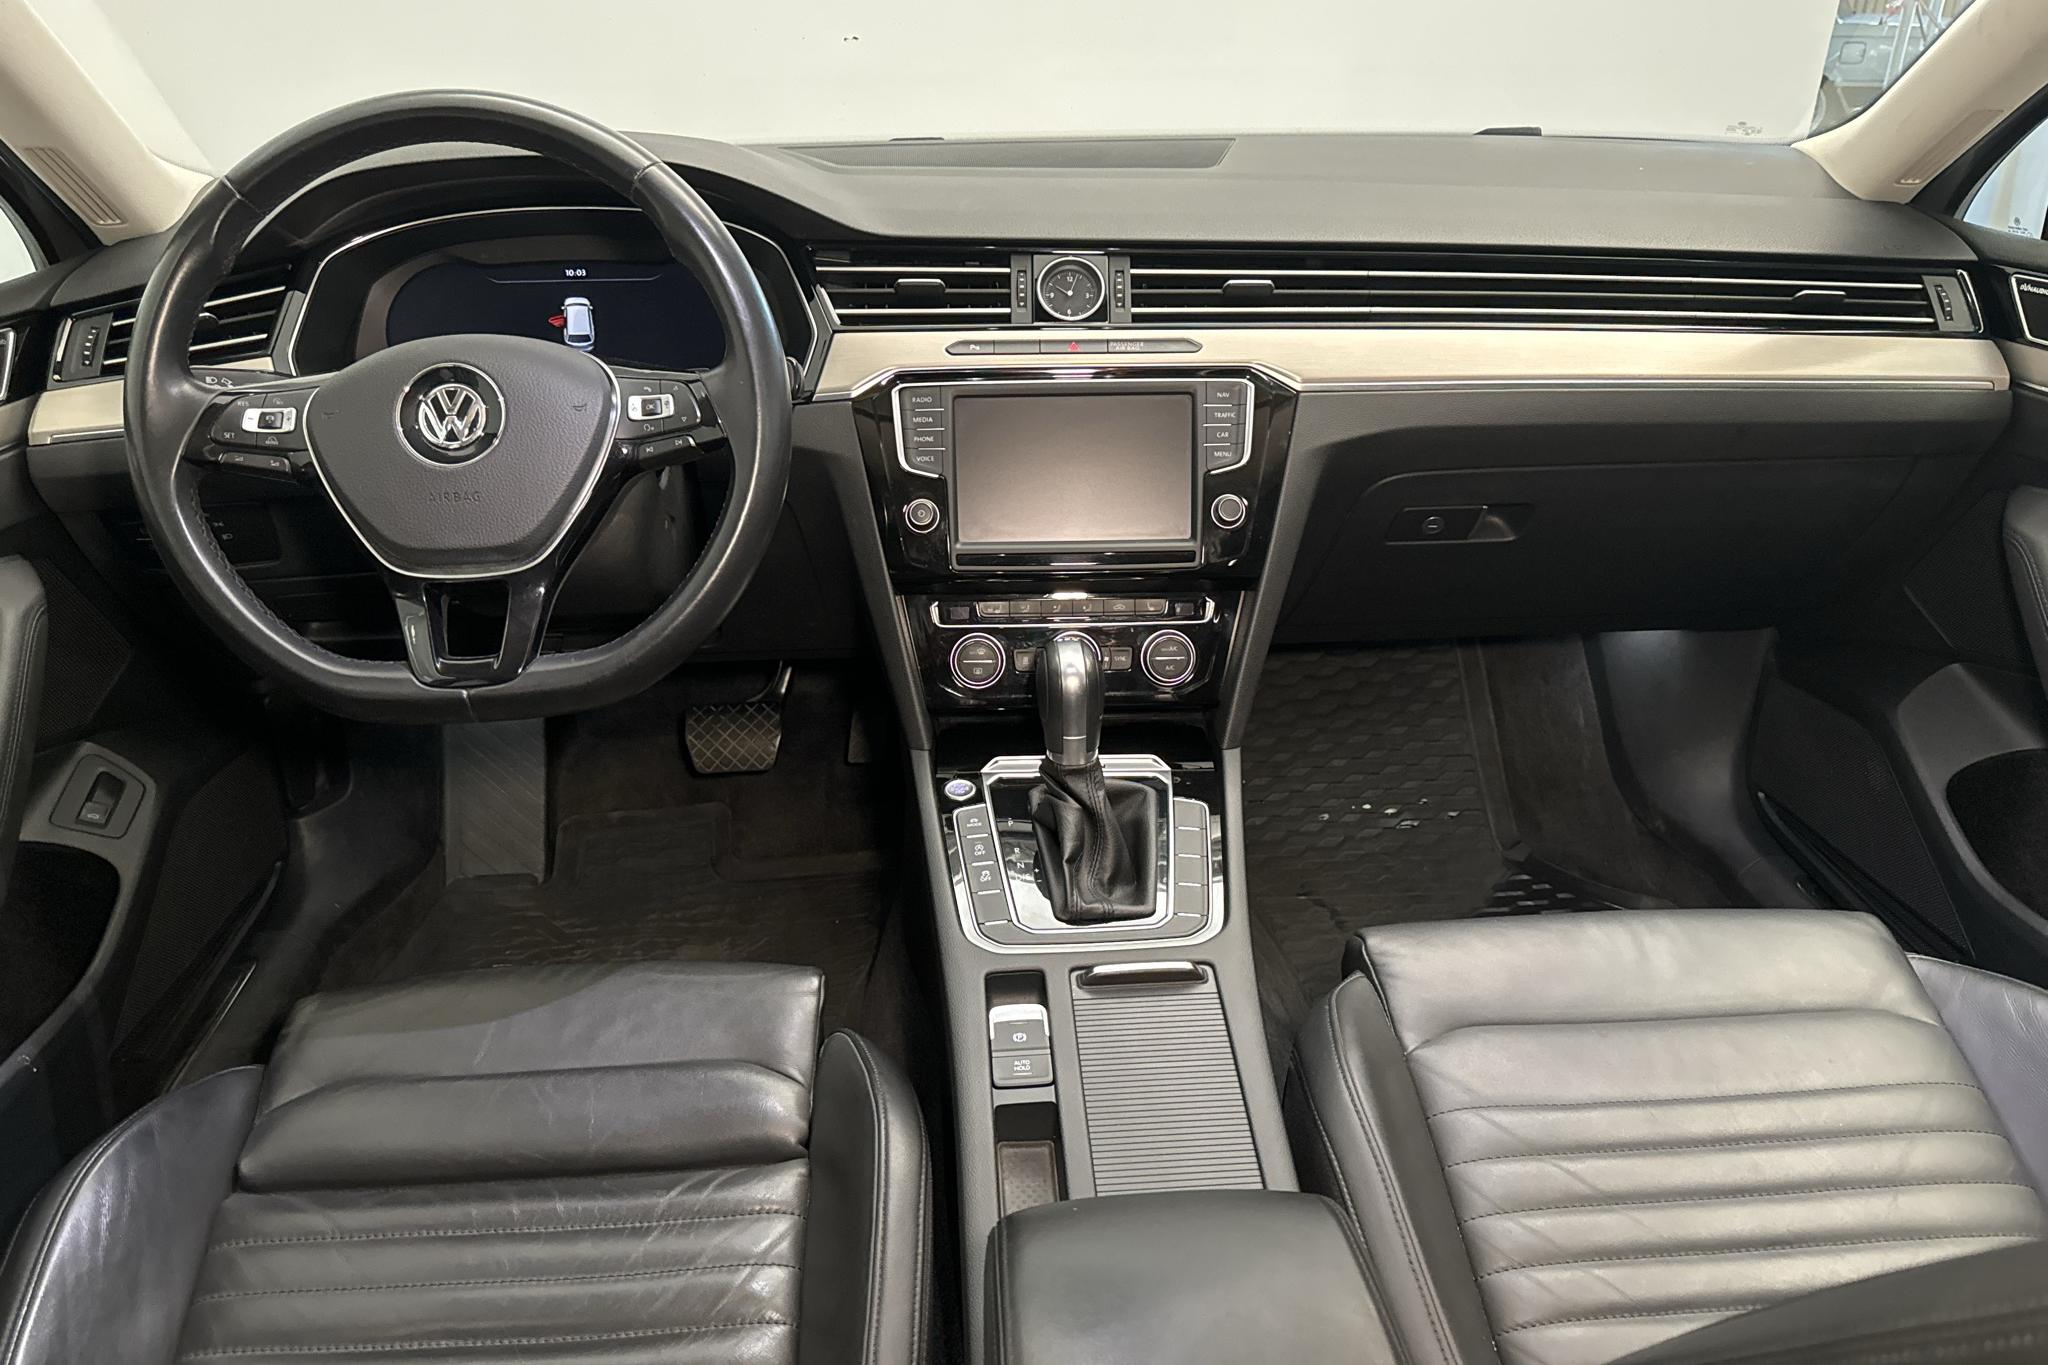 VW Passat 2.0 TDI Sportscombi 4MOTION (190hk) - 131 170 km - Automaattinen - hopea - 2015